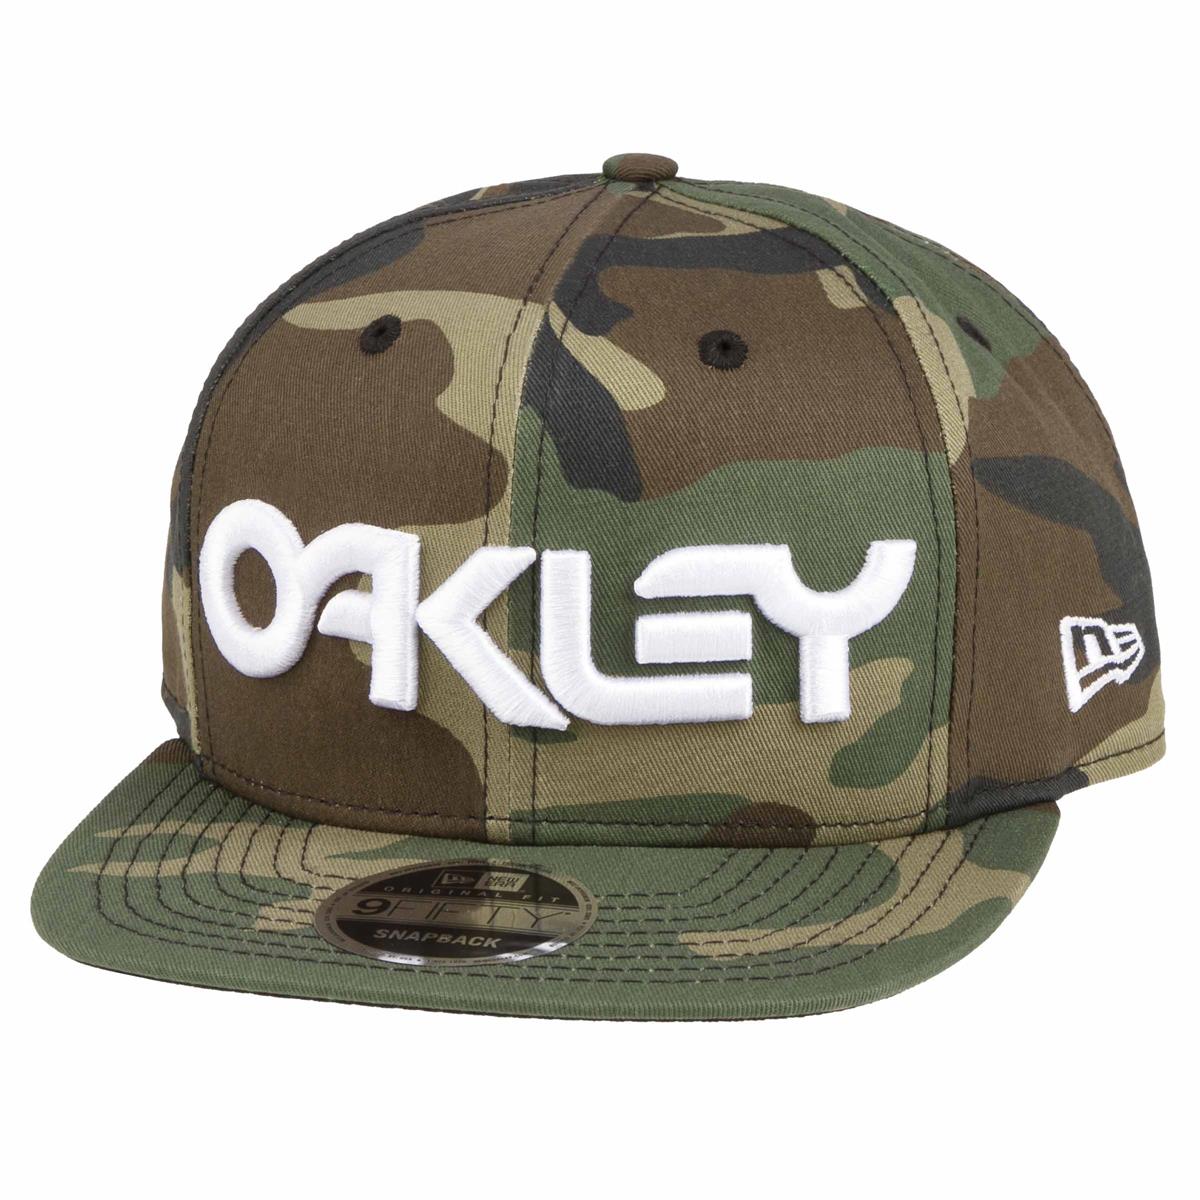 Oakley Cap Size Chart